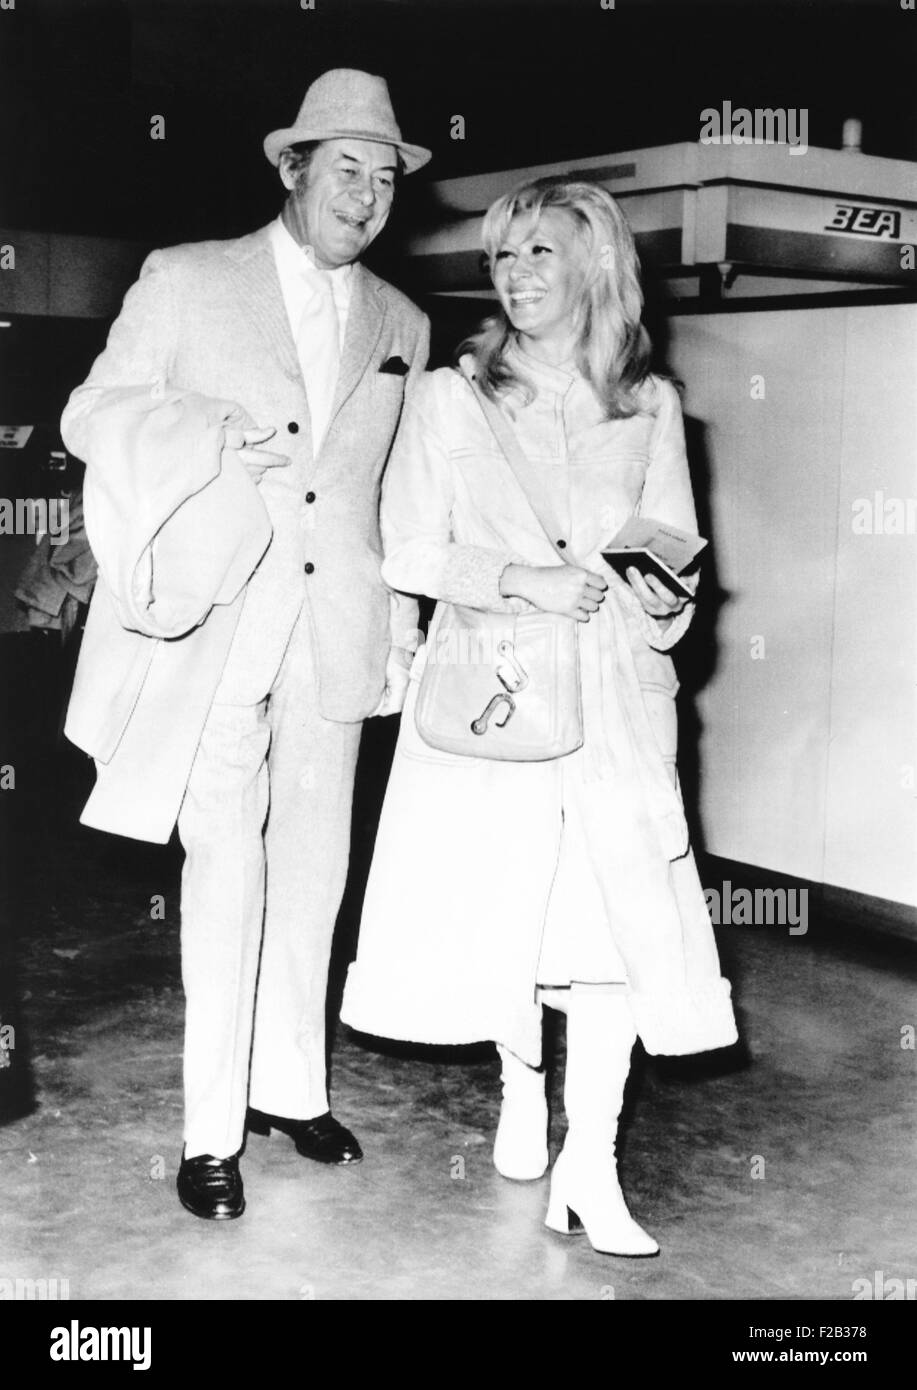 Rex Harrison acteur et Elizabeth Harris, ex-épouse de l'acteur Richard Harris, à l'aéroport de Heathrow. Les fiancés prennent de courtes vacances à Lo Bourgot, France. Le 26 novembre 1970. Leur mariage a duré de 1971 à 1975. CSU (2015  7 282) Banque D'Images